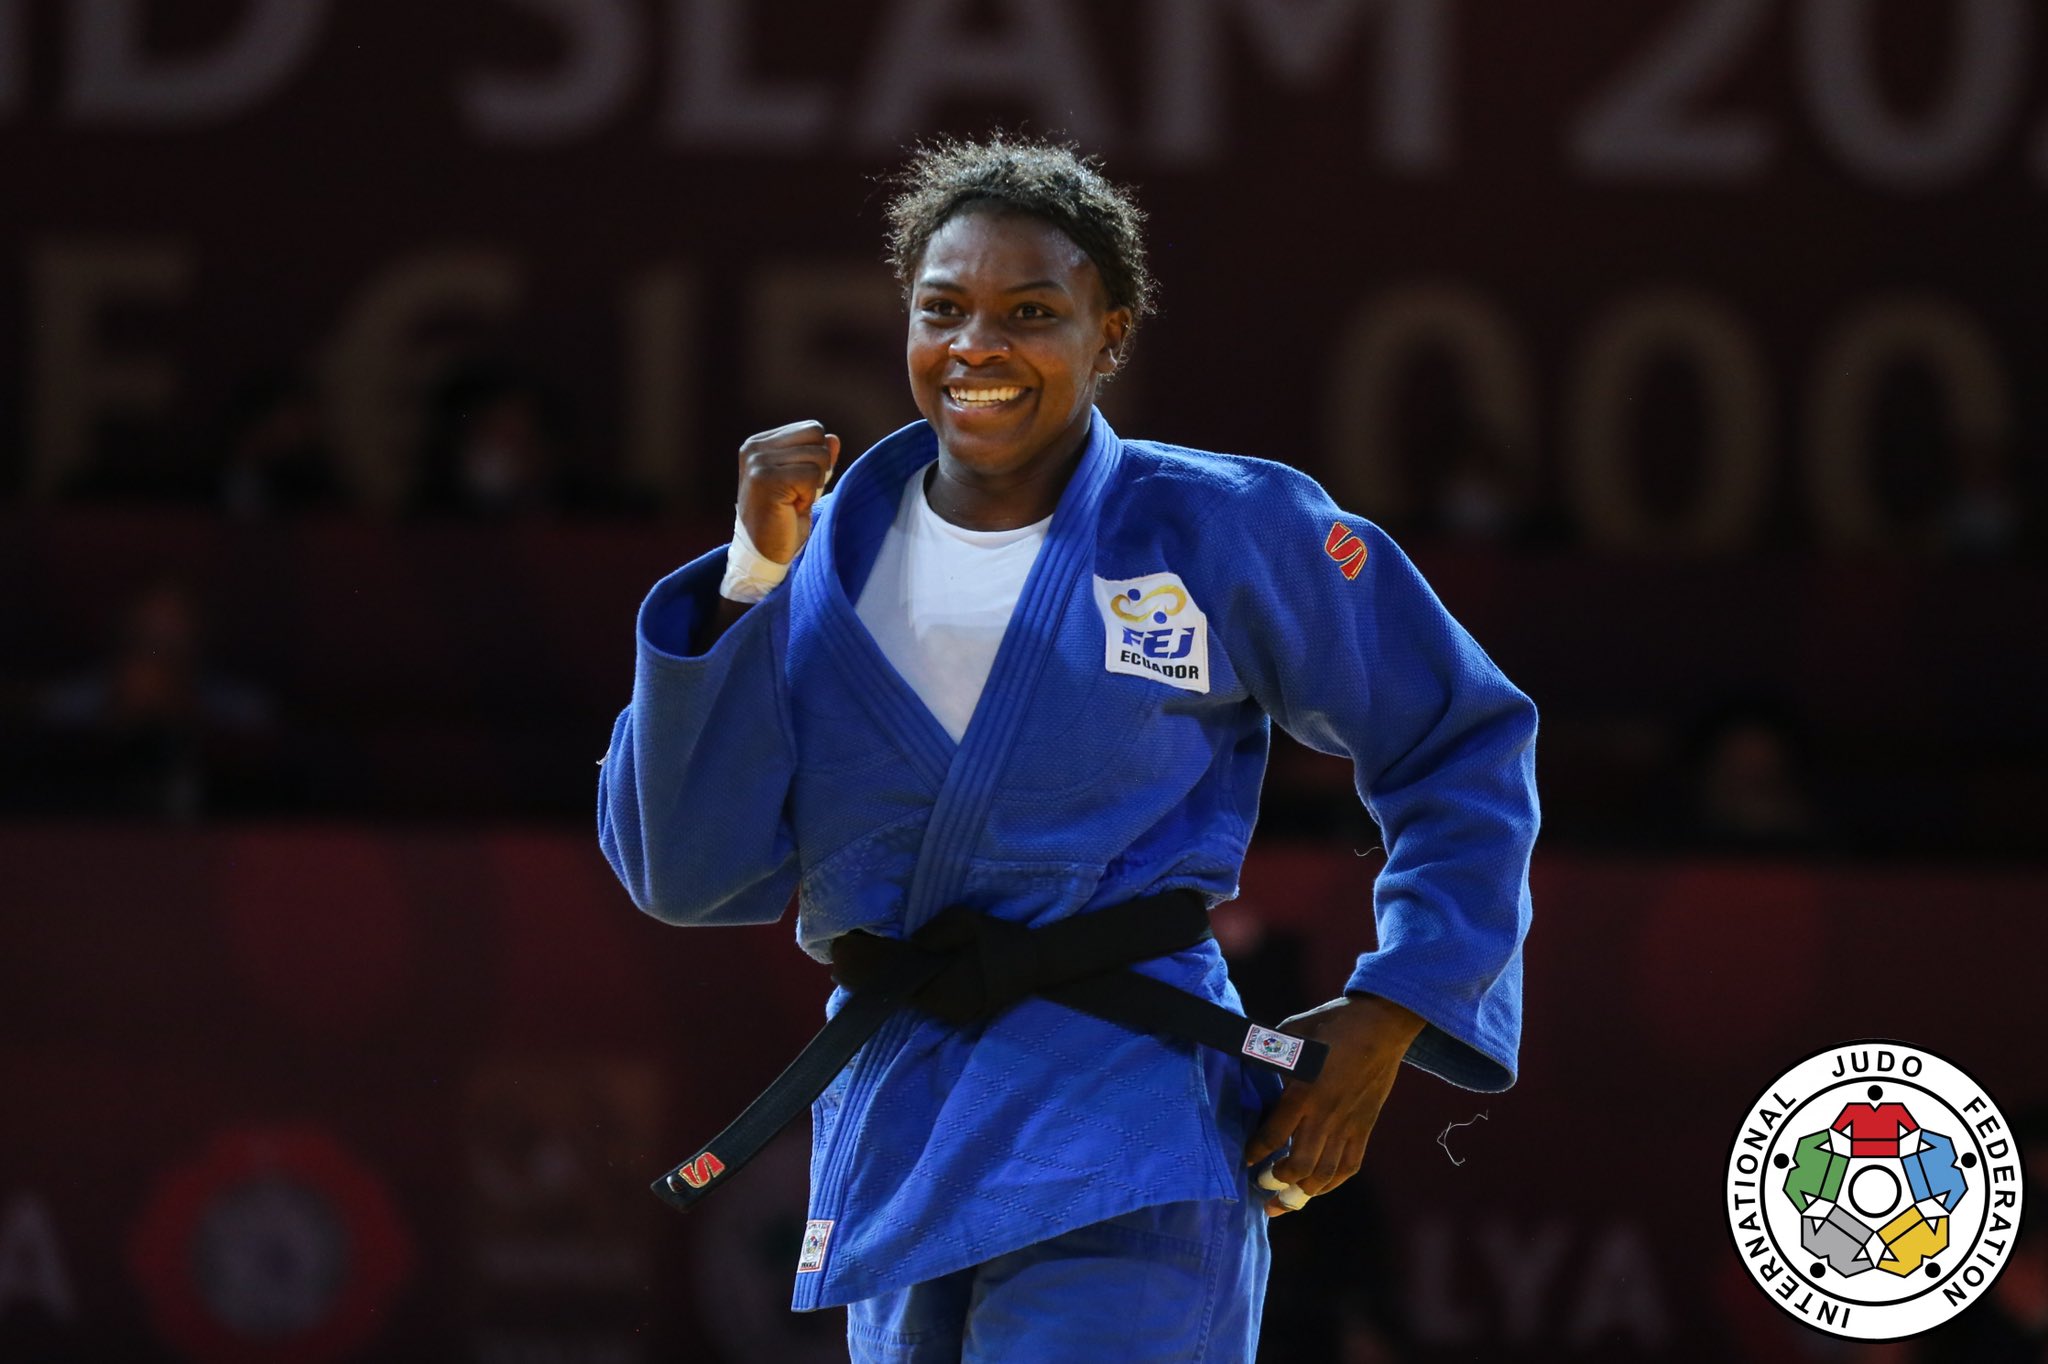 Vanessa Chalá regresó al judo tras su descanso por maternidad y ganó el oro en el Open Panamericano de Judo. Foto: FEJ